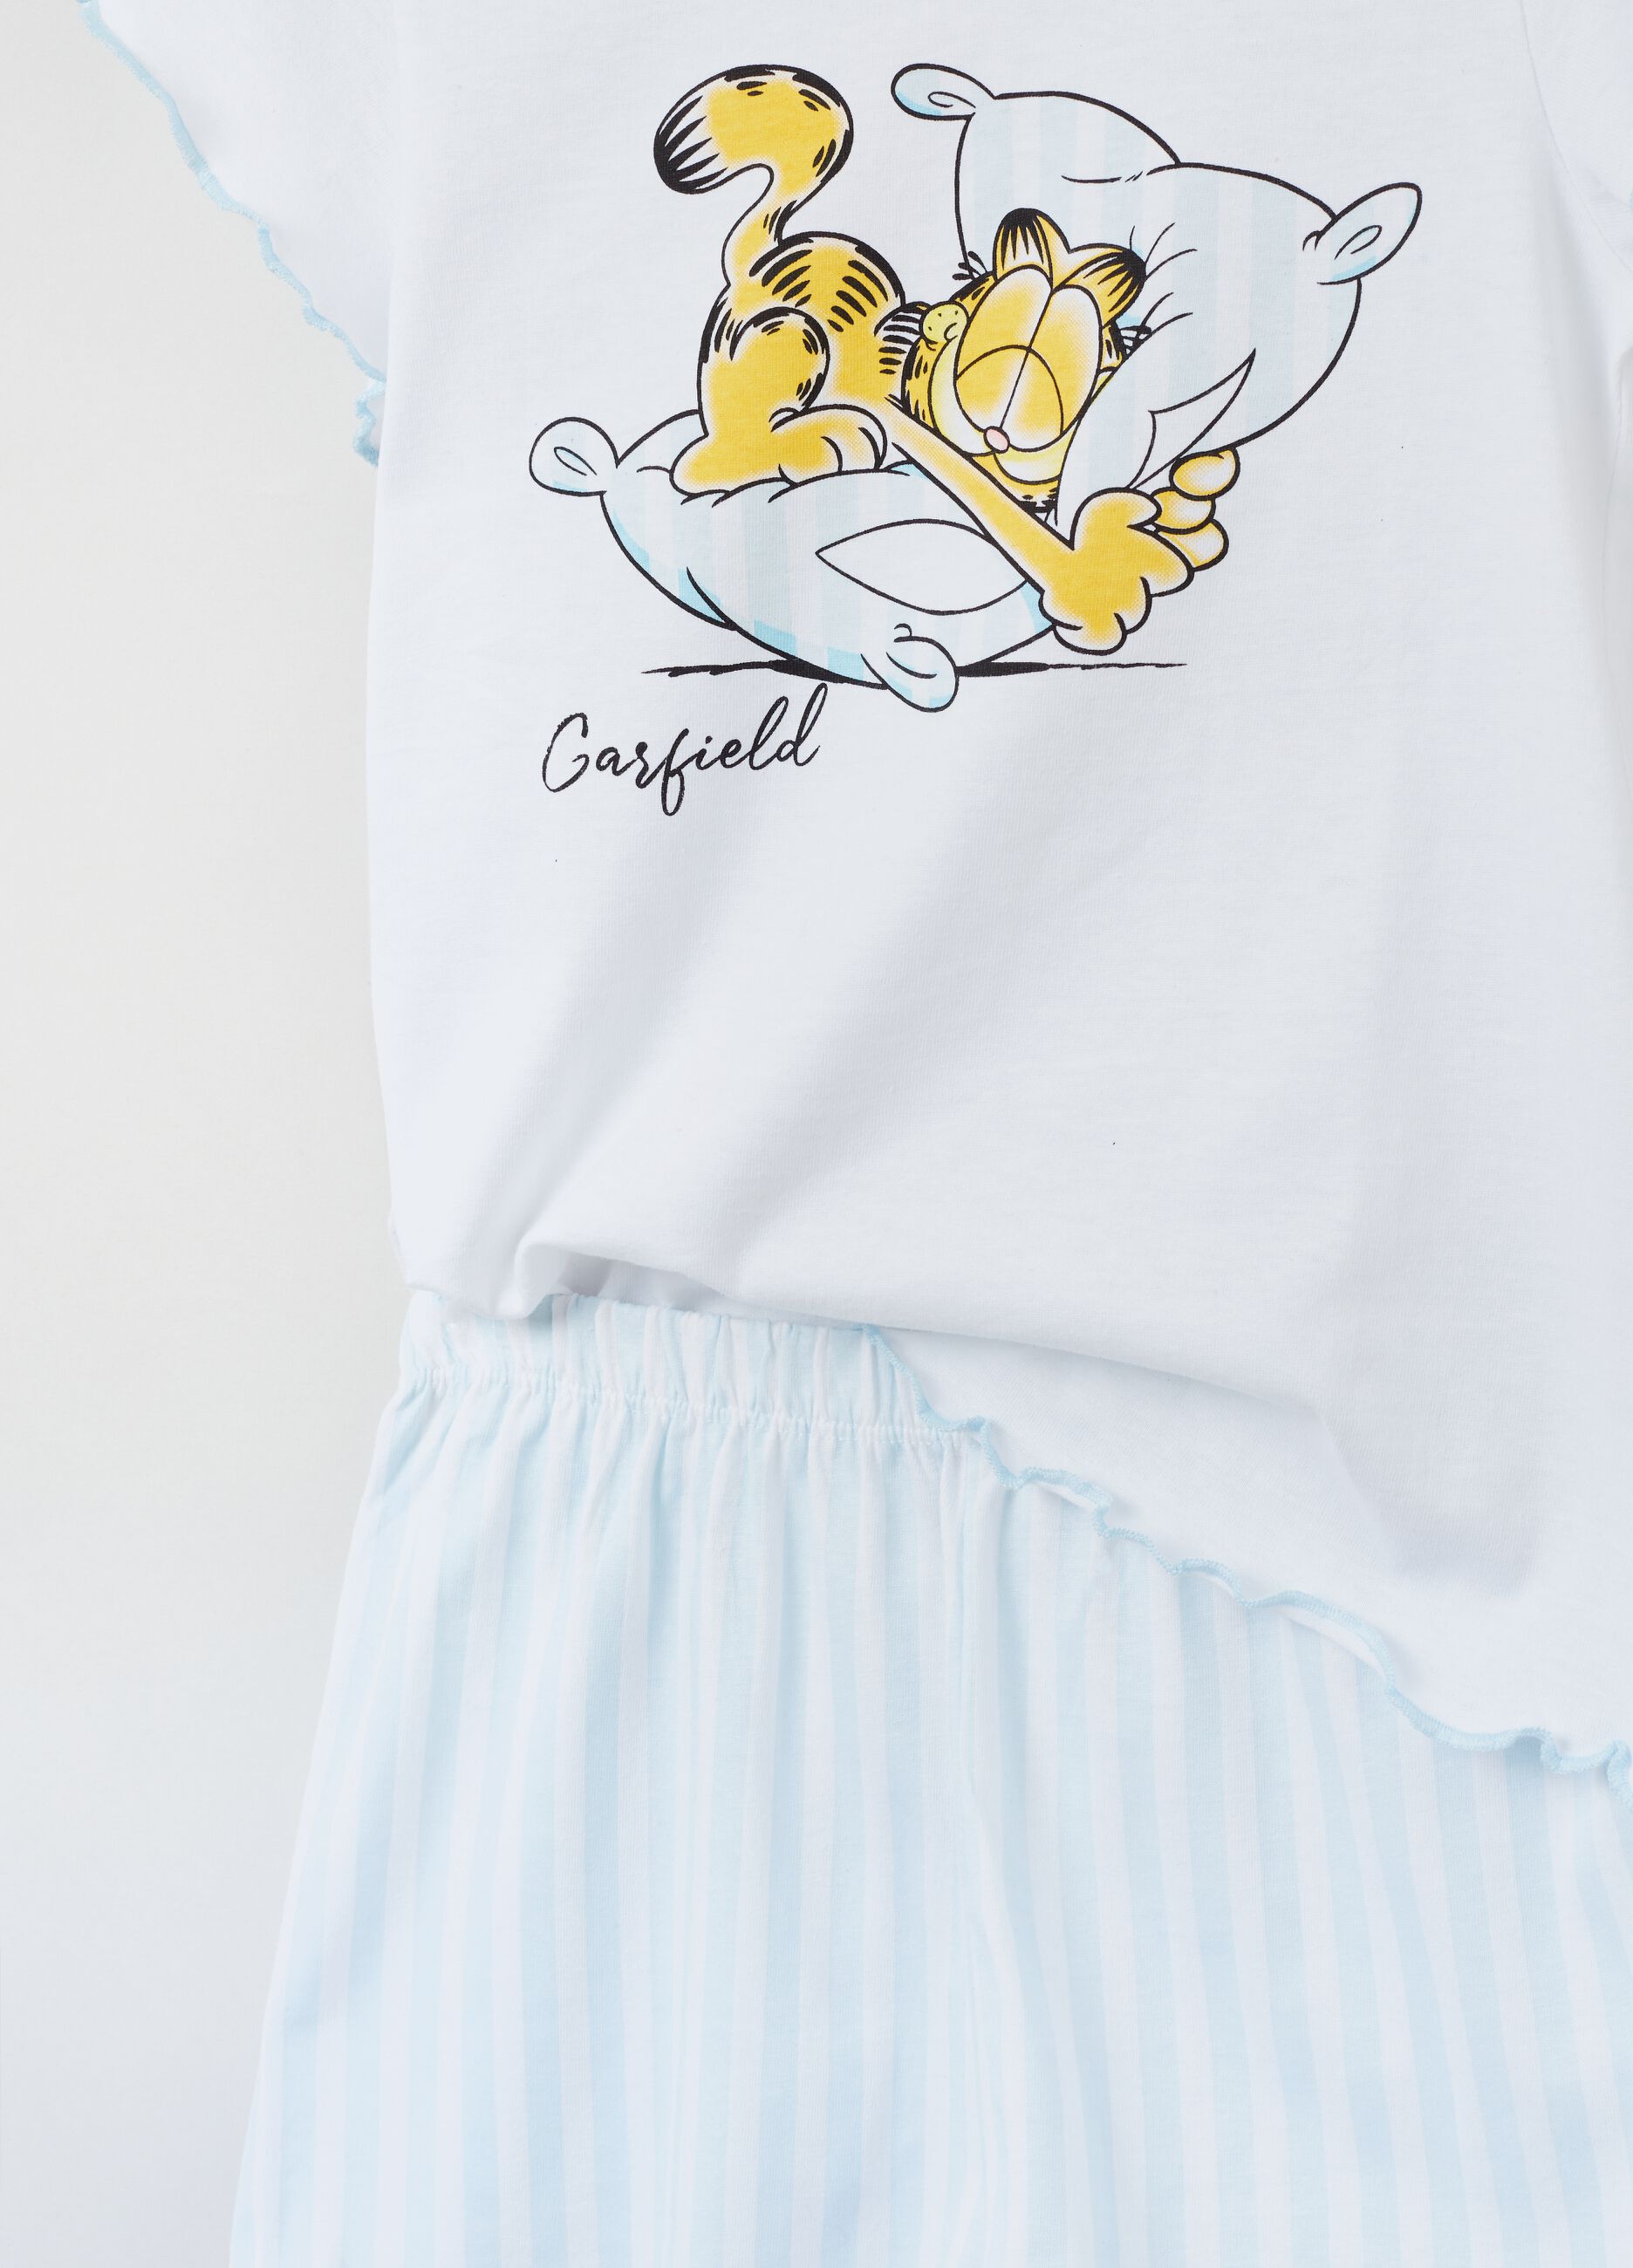 Pijama de algodón con estampado Garfield